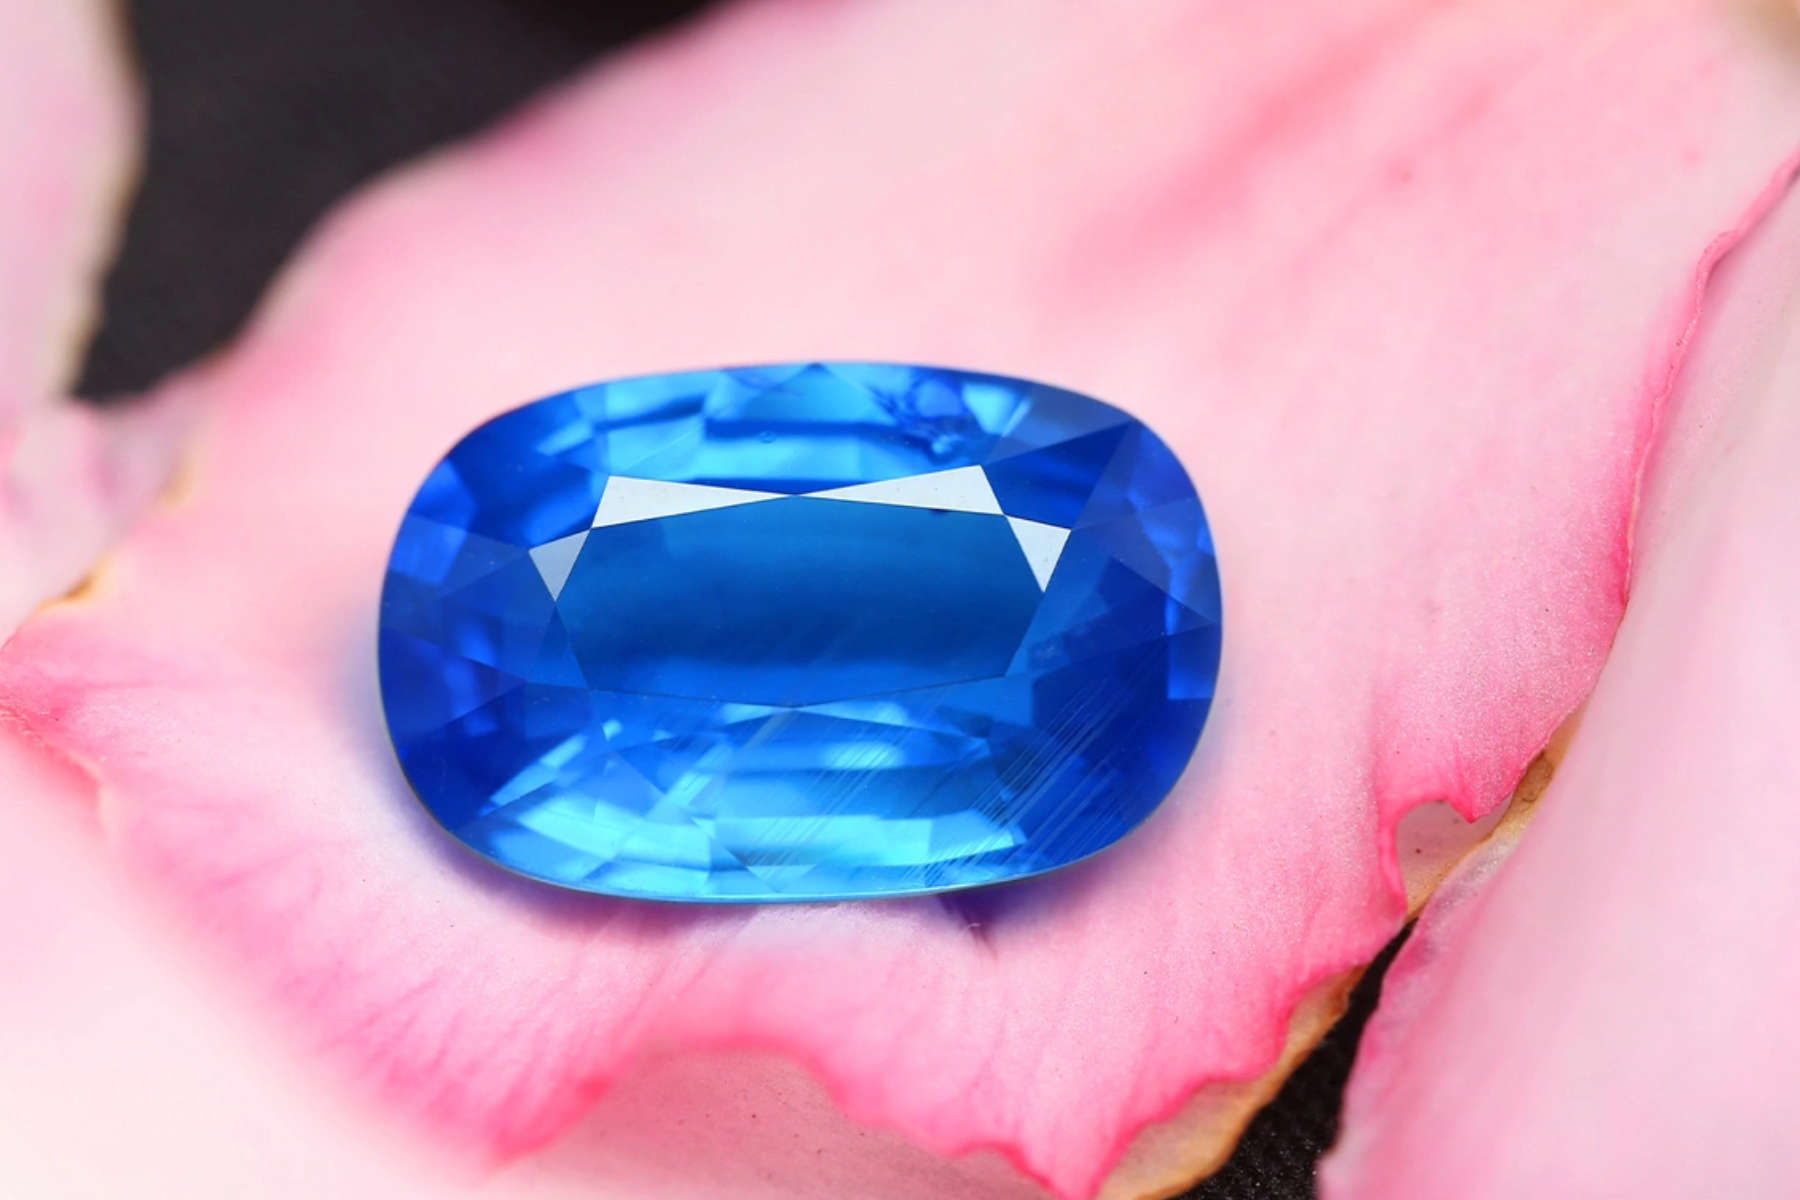 An oblong blue sapphire stone on a pink flower petal